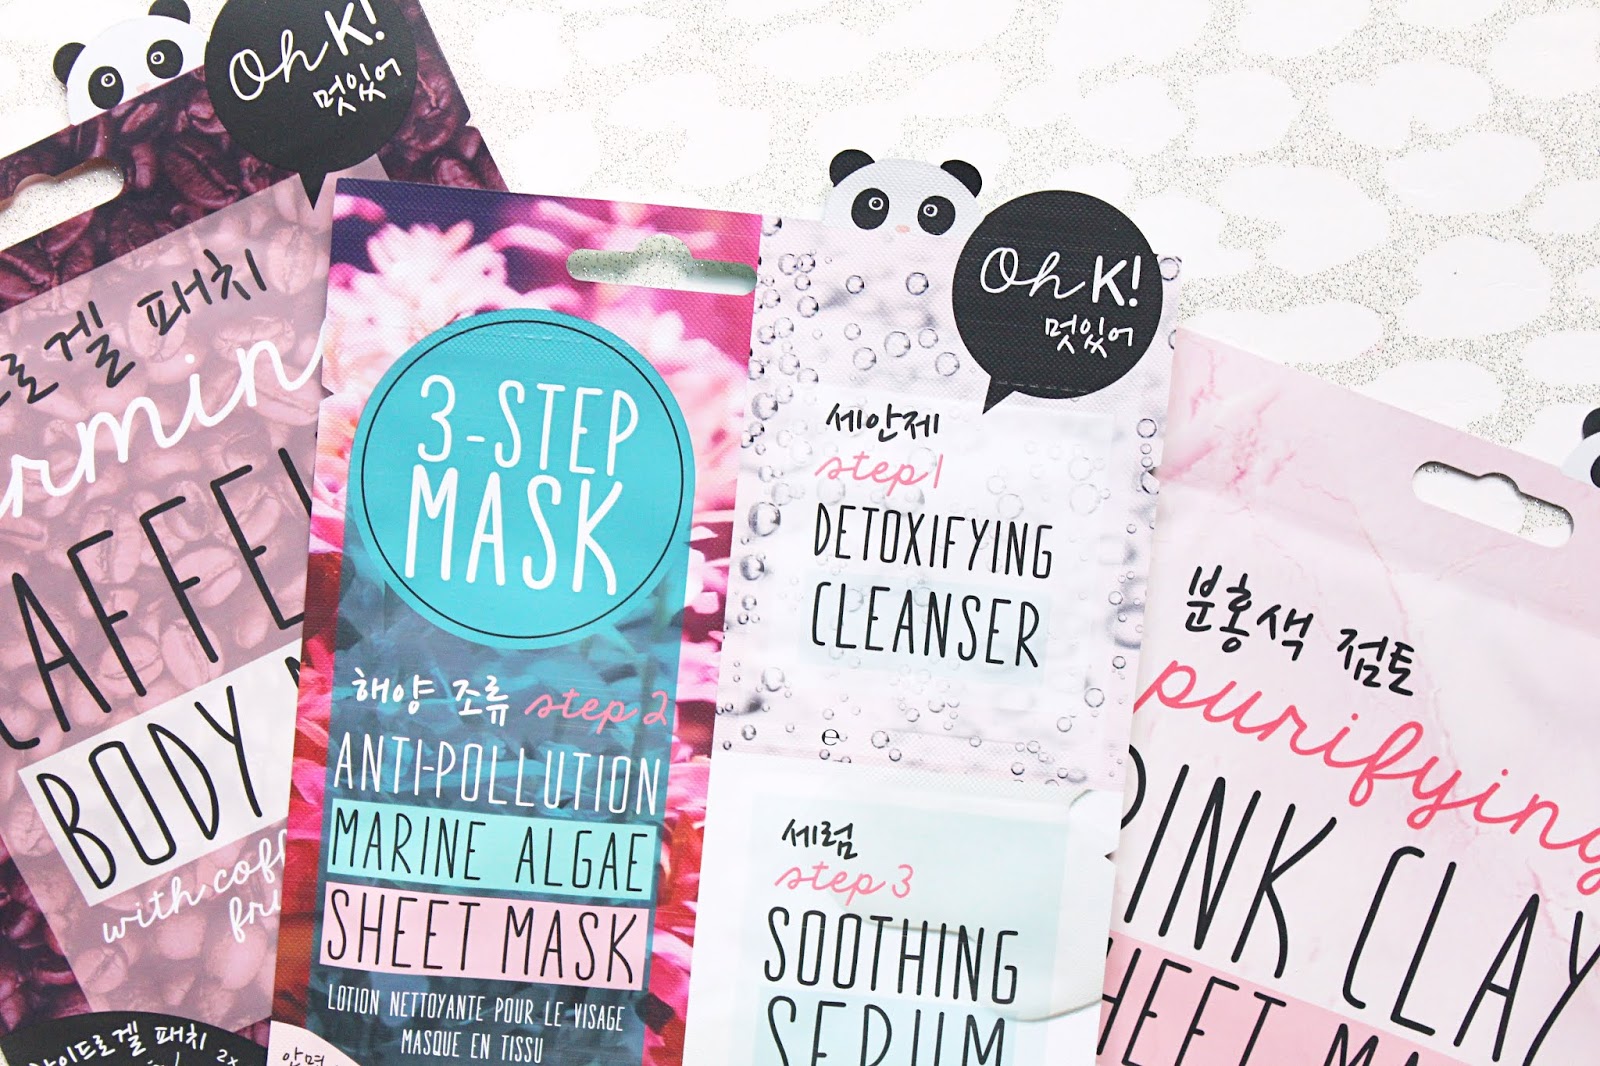 Oh K! Sheet Masks & Skincare 